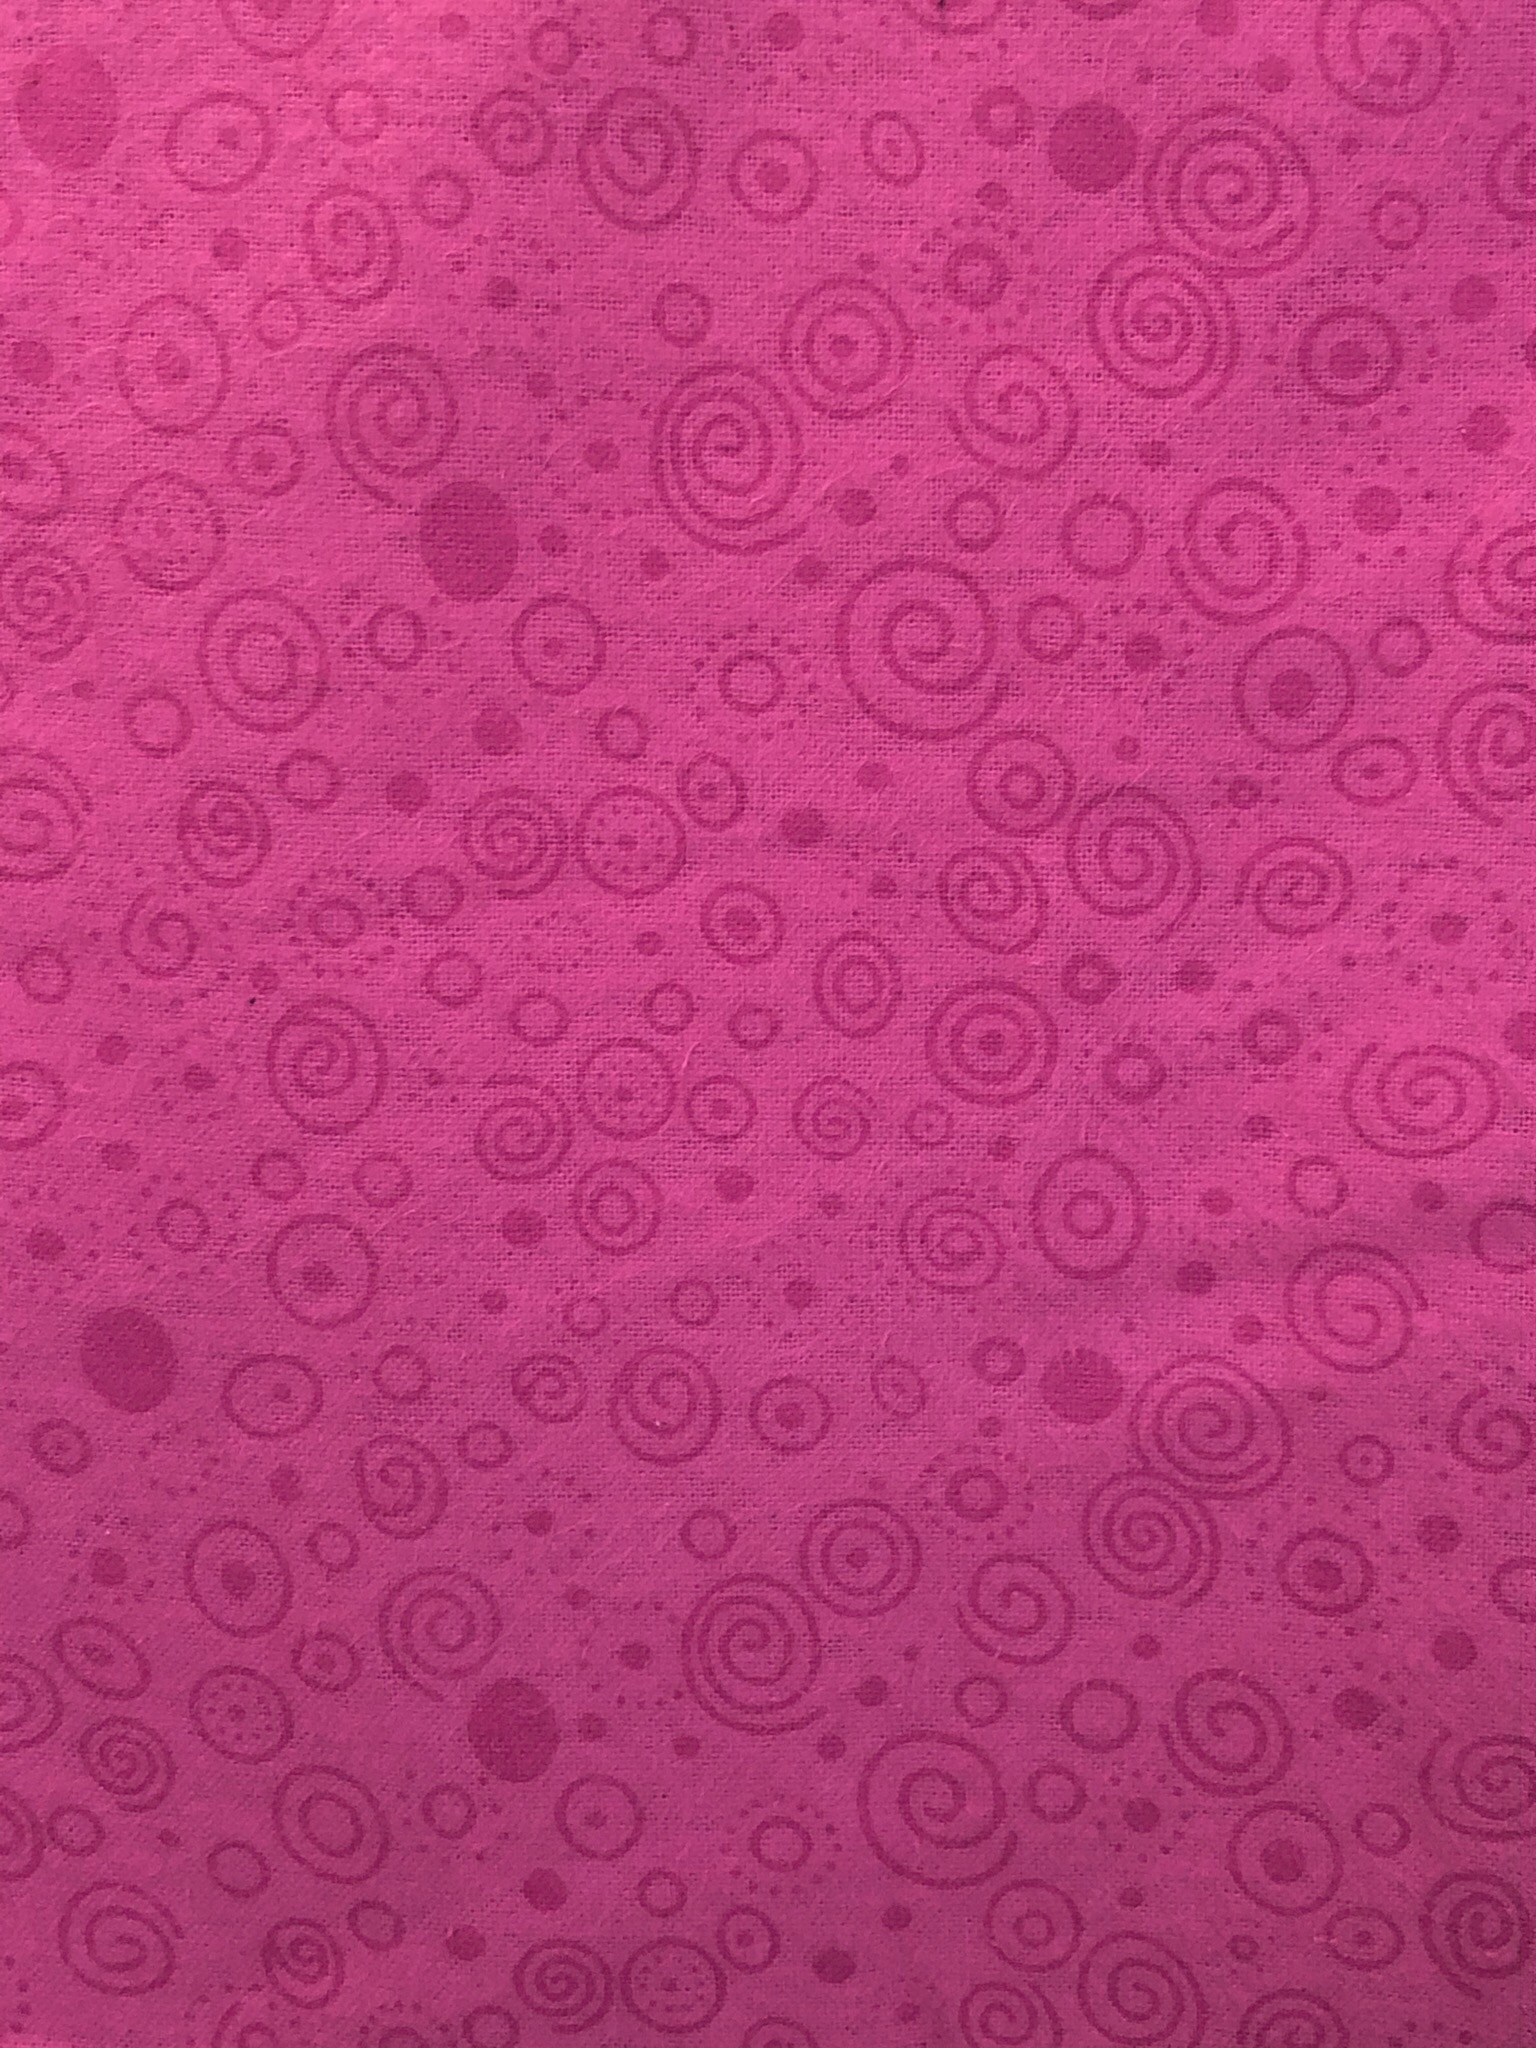 Flannel 108" - Hot Pink Swirls & Dots - 1/2m cut 55405